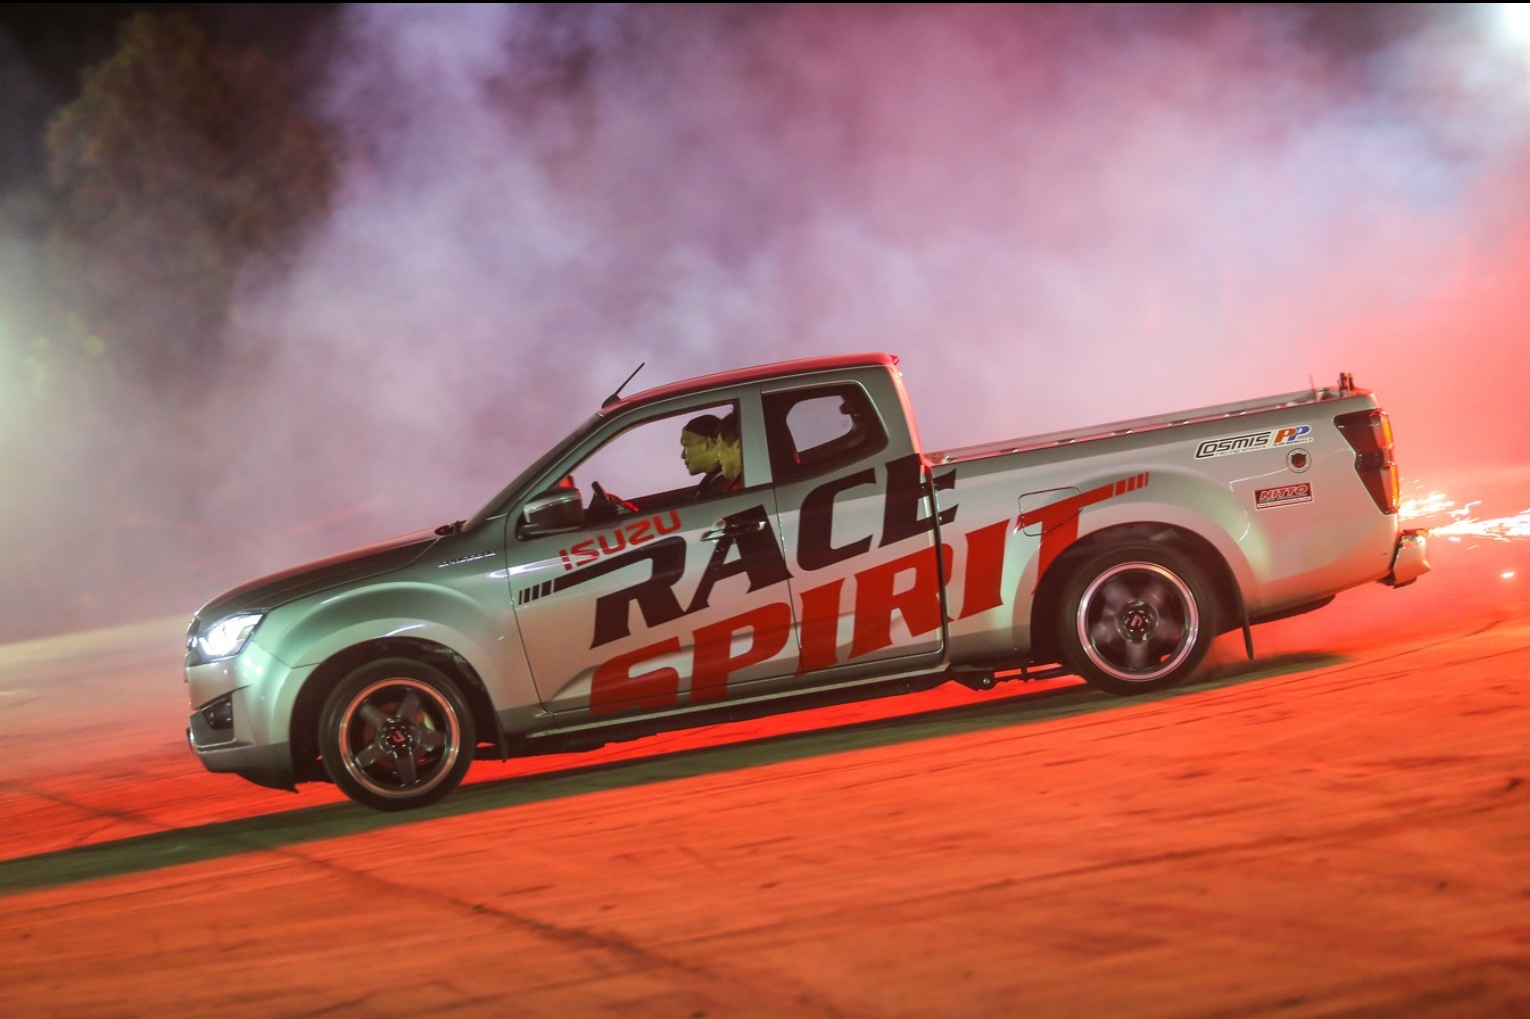 อีซูซุระเบิดความมัน...เฟ้นหาสุดยอดรถ “อีซูซุดีแมคซ์” ที่แรงและเร็วที่สุดแห่งปี ในการแข่งขัน Isuzu Race Spirit 2019 รอบชิงชนะเลิศ 